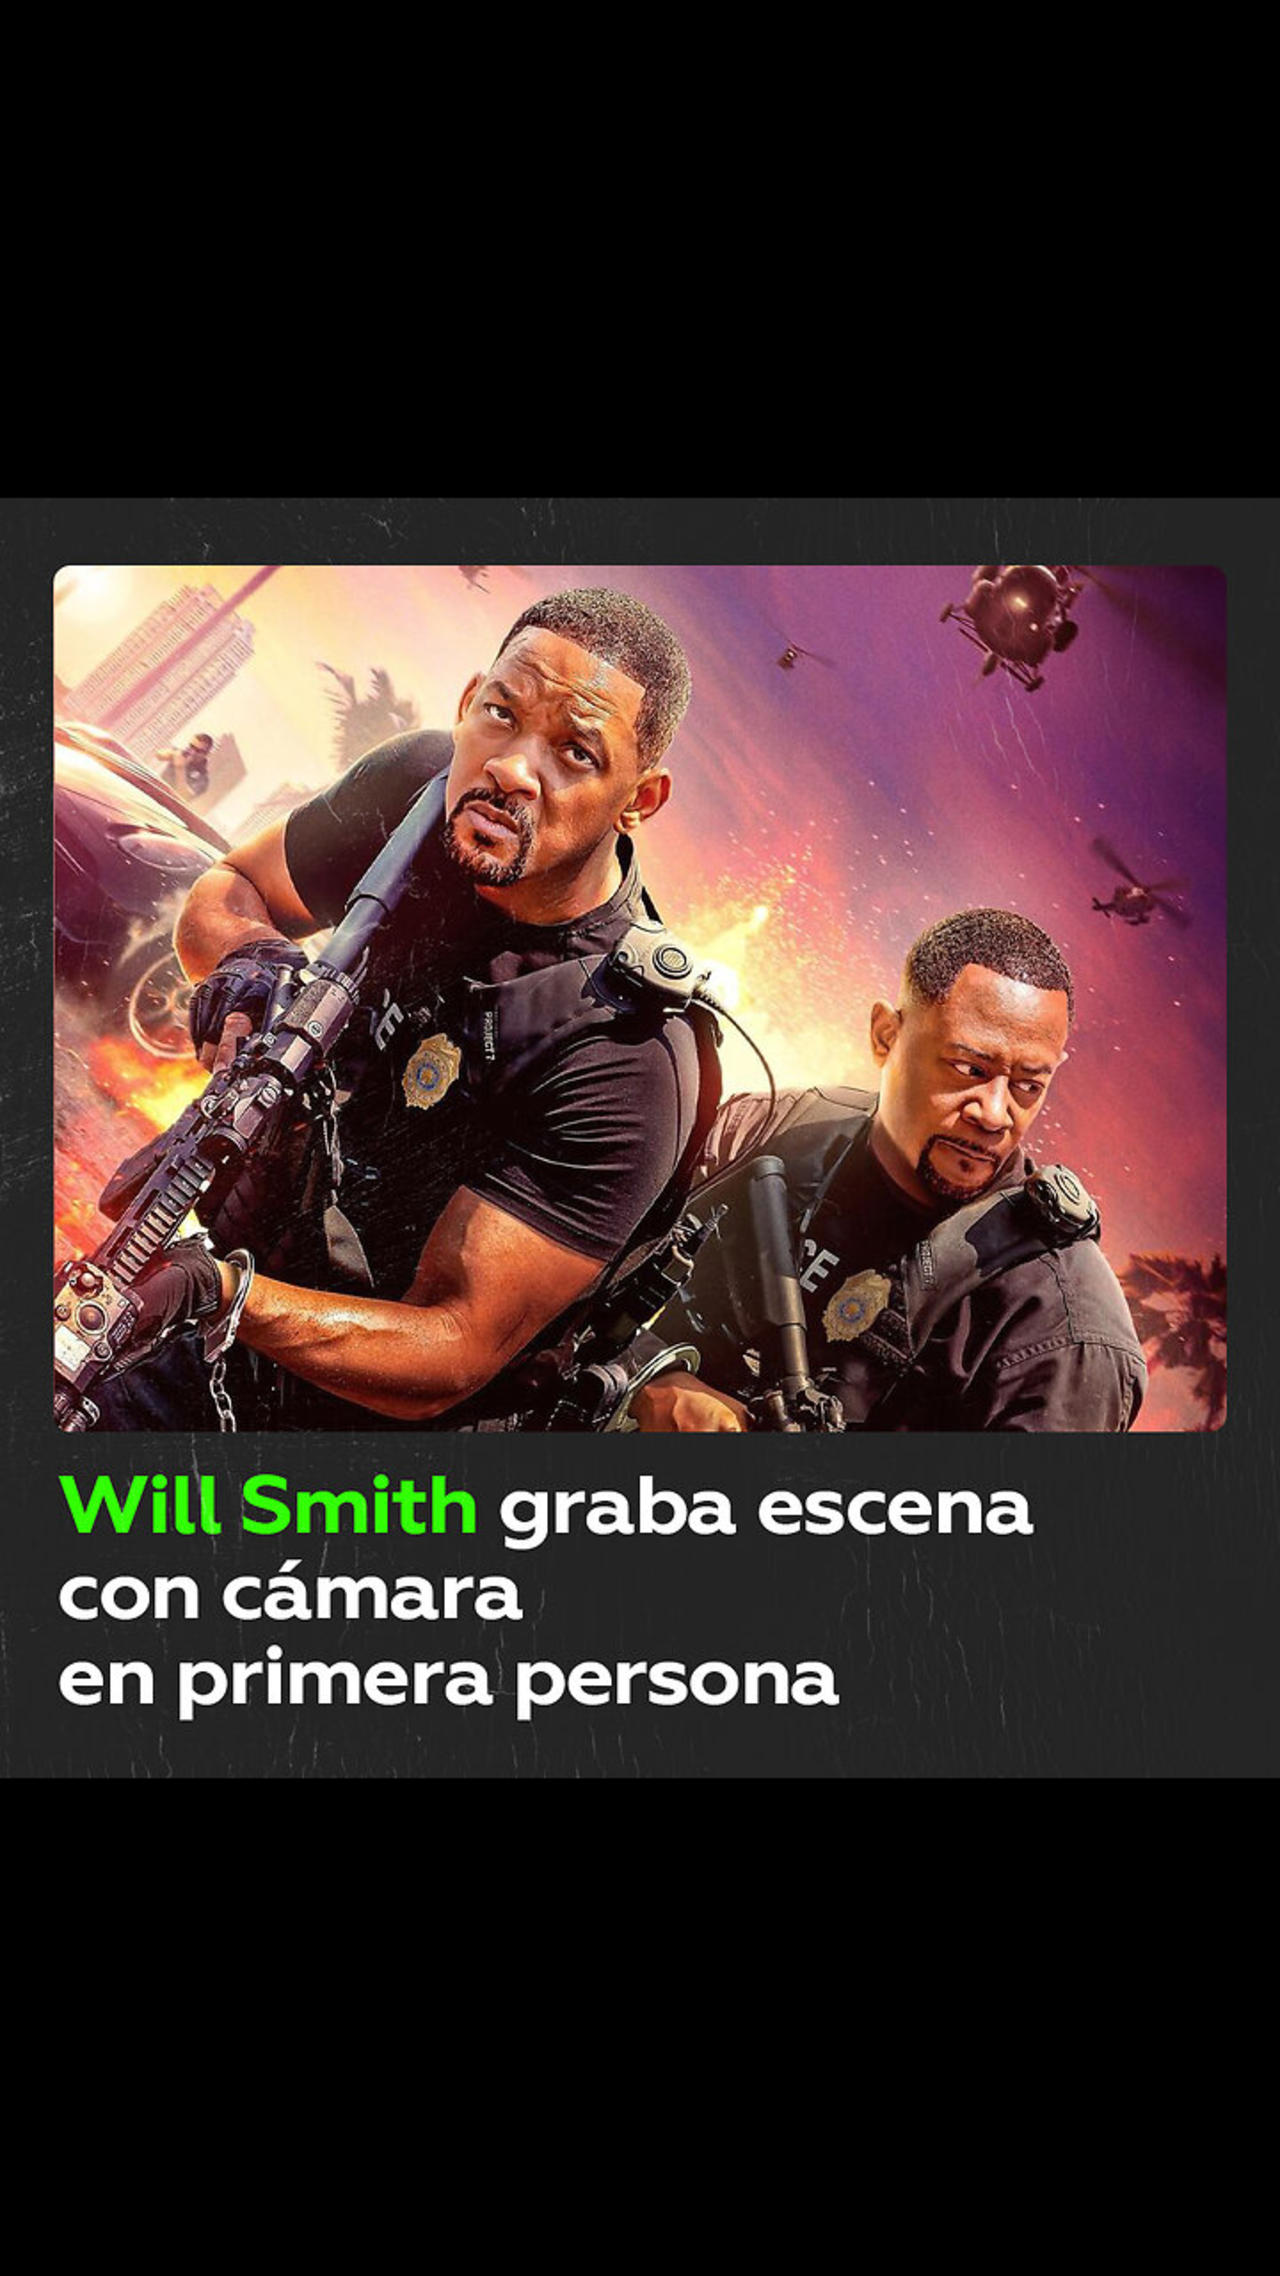 Will Smith publica un adelanto en primera persona de su nuevo film